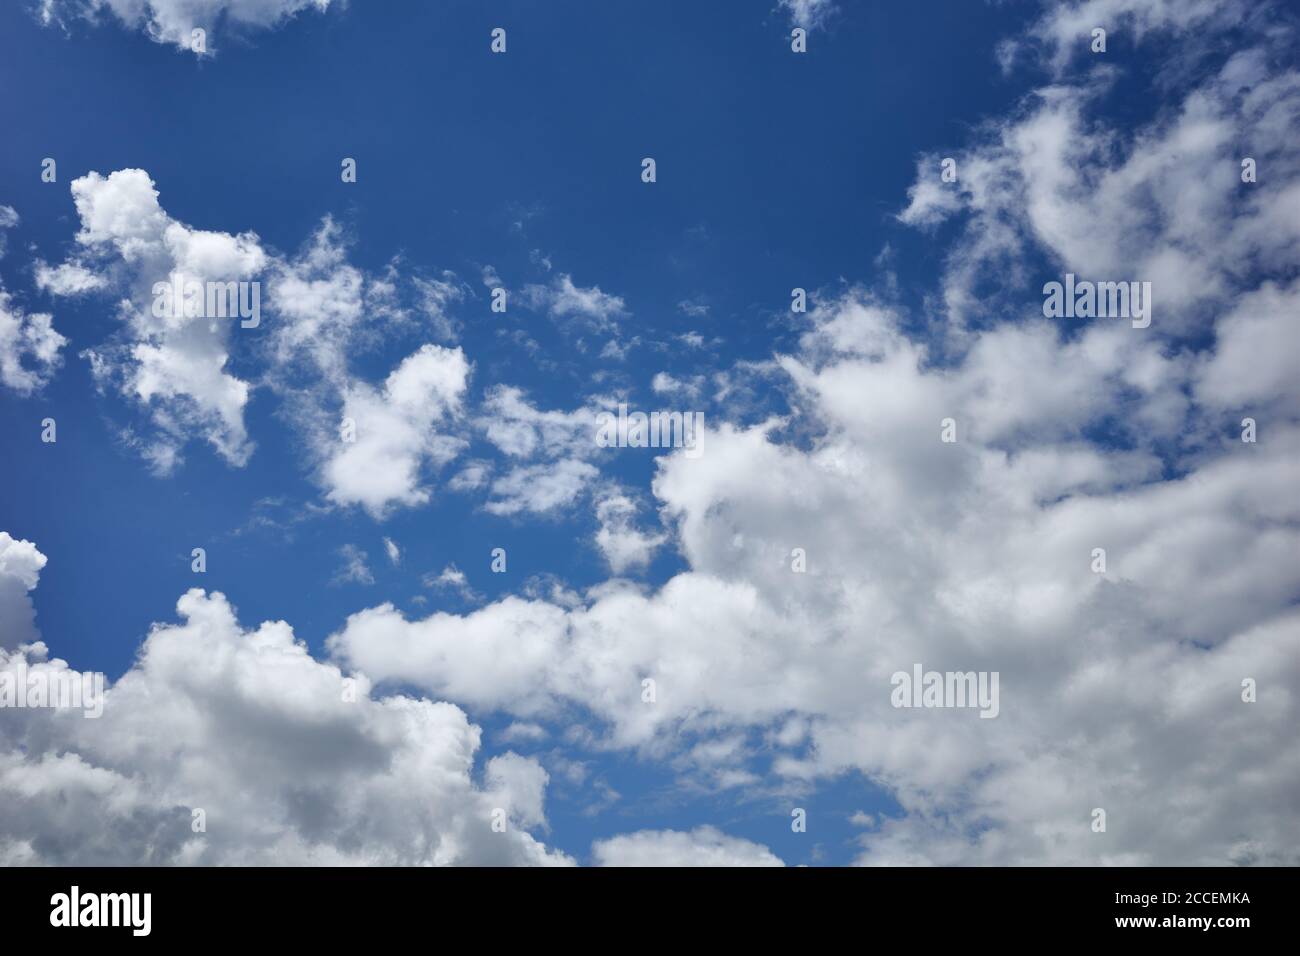 Bezaubernder blauer Himmel bedeckt mit Wolken. Himmlische Pracht eines schönen bewölkten Tages. Hintergrund für Vorhersage und Meteorologie Illustration Stockfoto